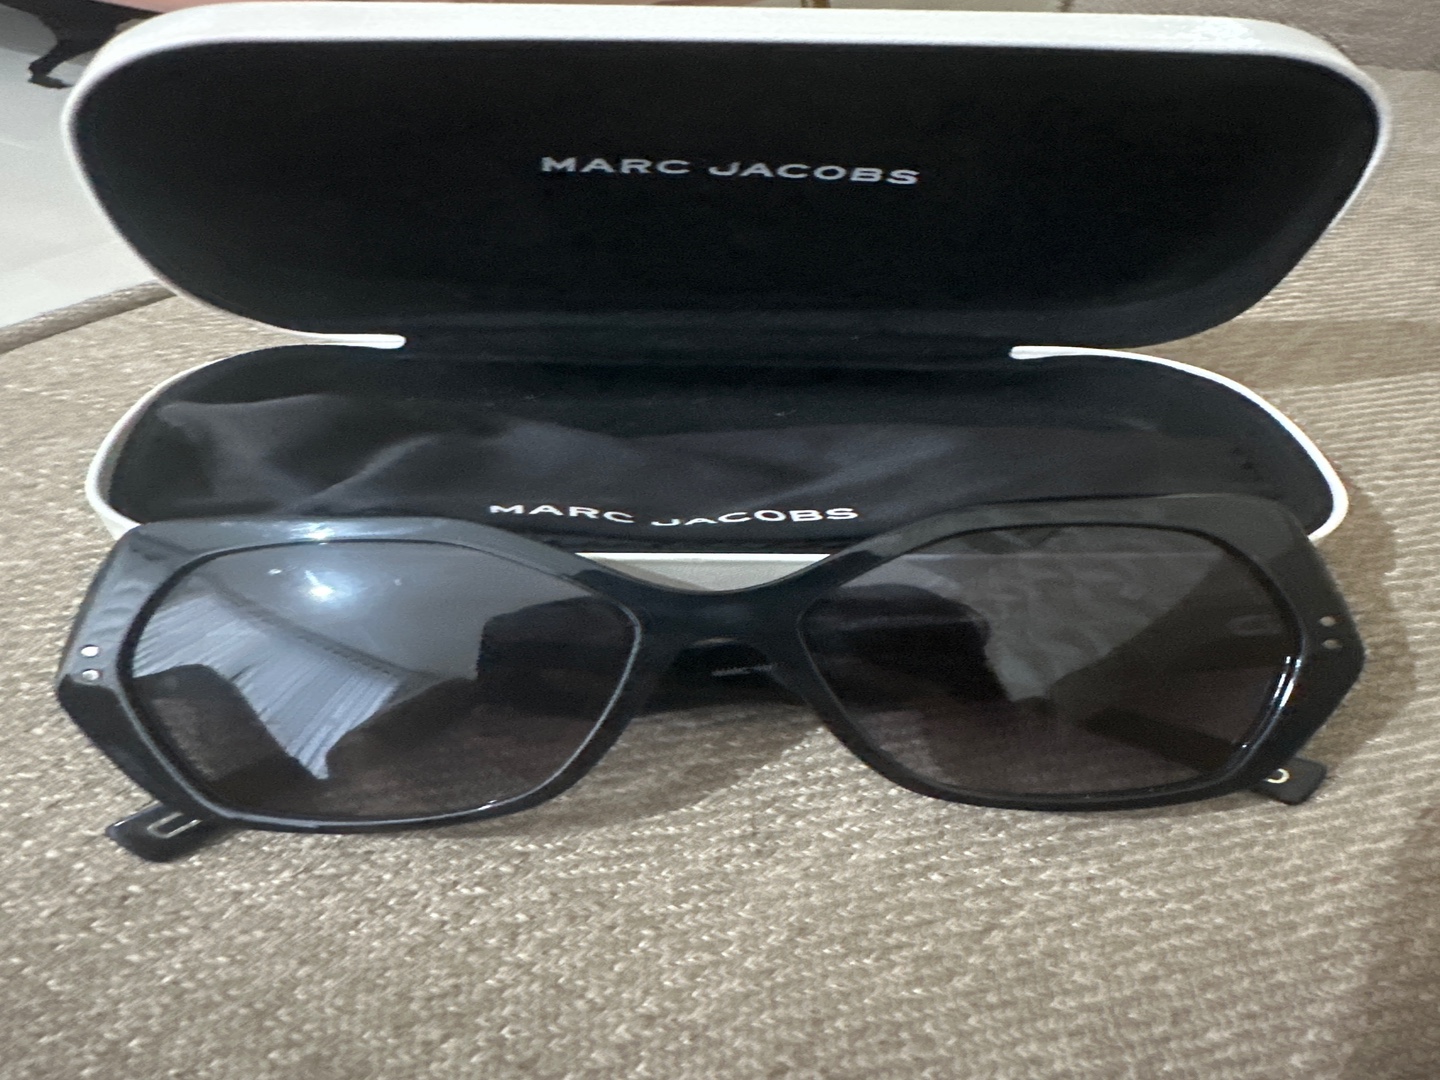 joyas, relojes y accesorios - Gafas Marc Jacobs negras originales, en perfecto estado  2